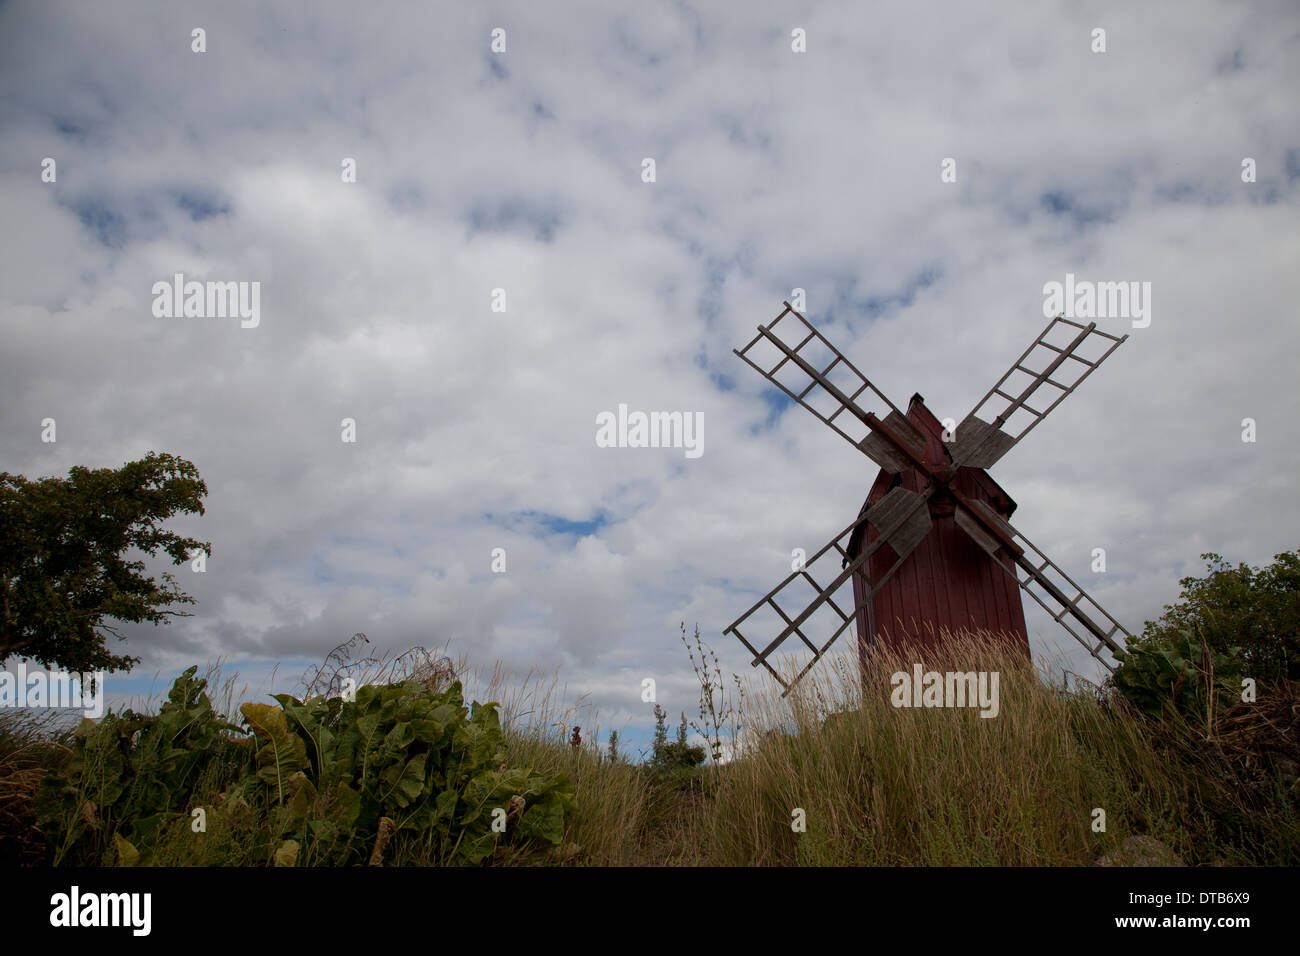 Ancien moulin à vent et de pelouse contre ciel nuageux, Oland, Sweden Banque D'Images